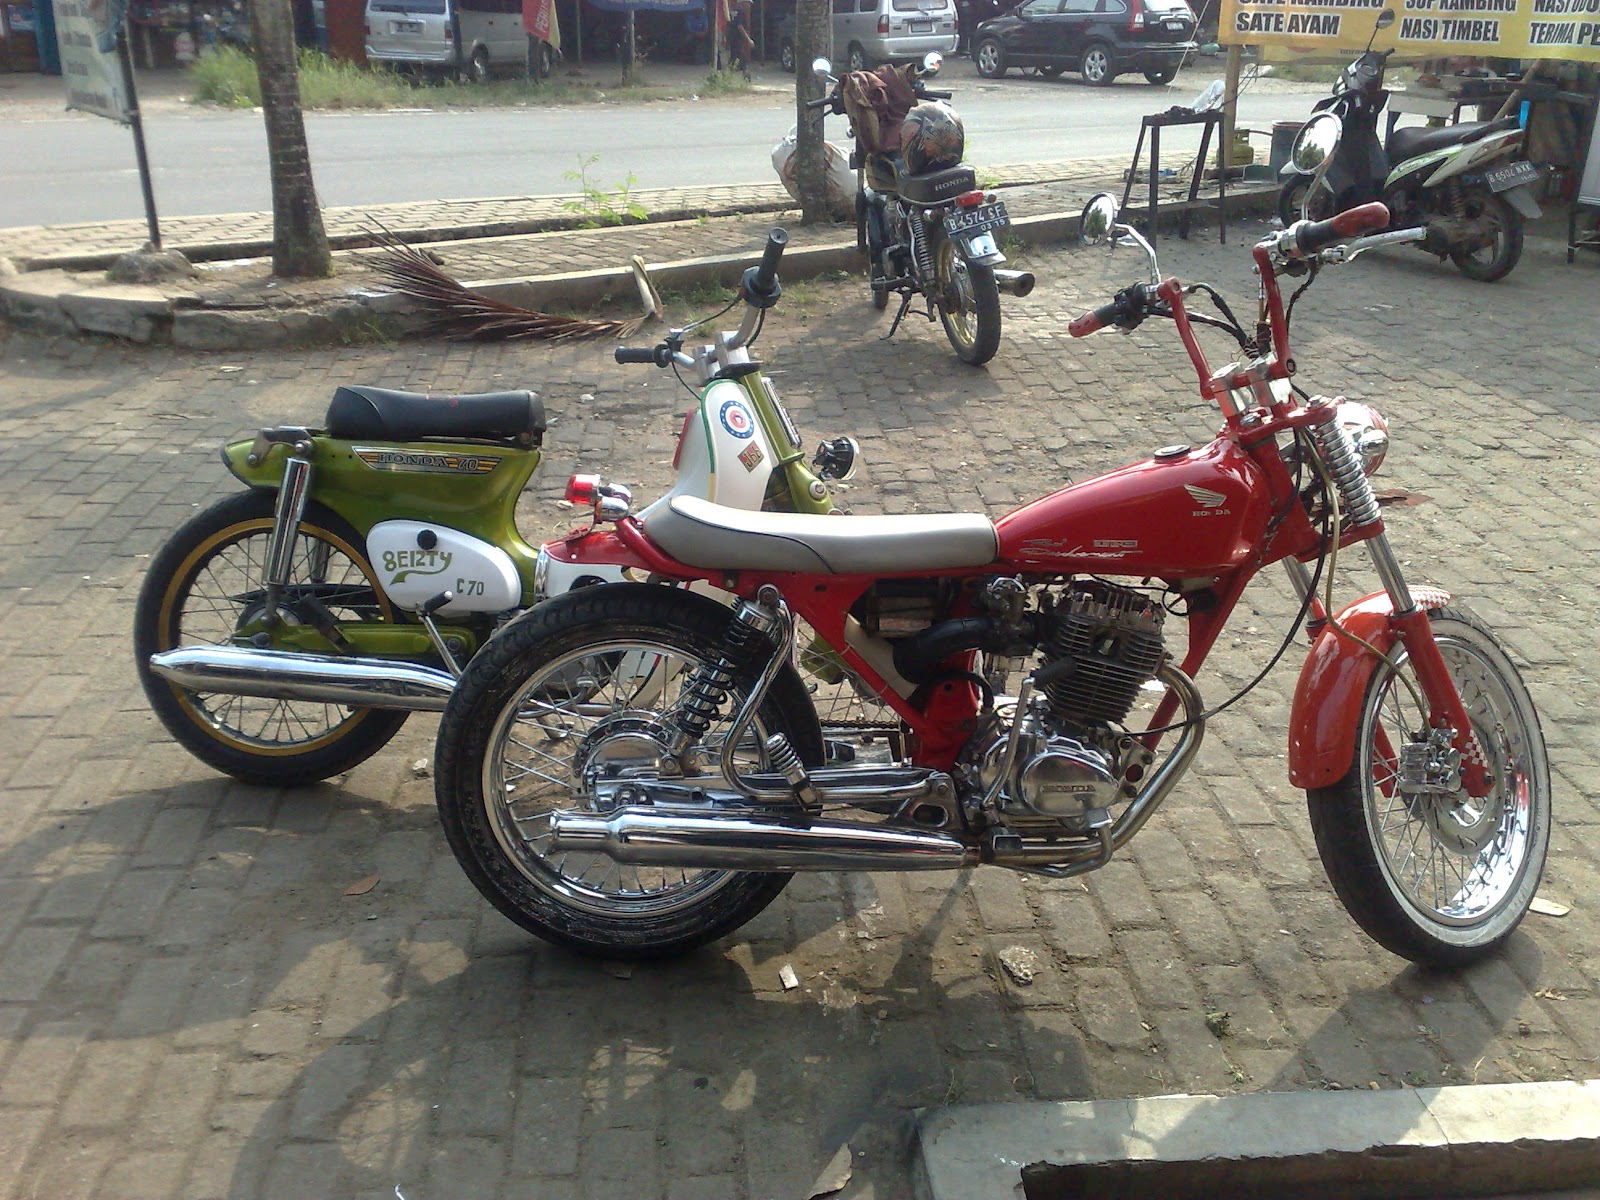  Modifikasi  Motor  Cb Surabaya  ProMotorTerbaru com